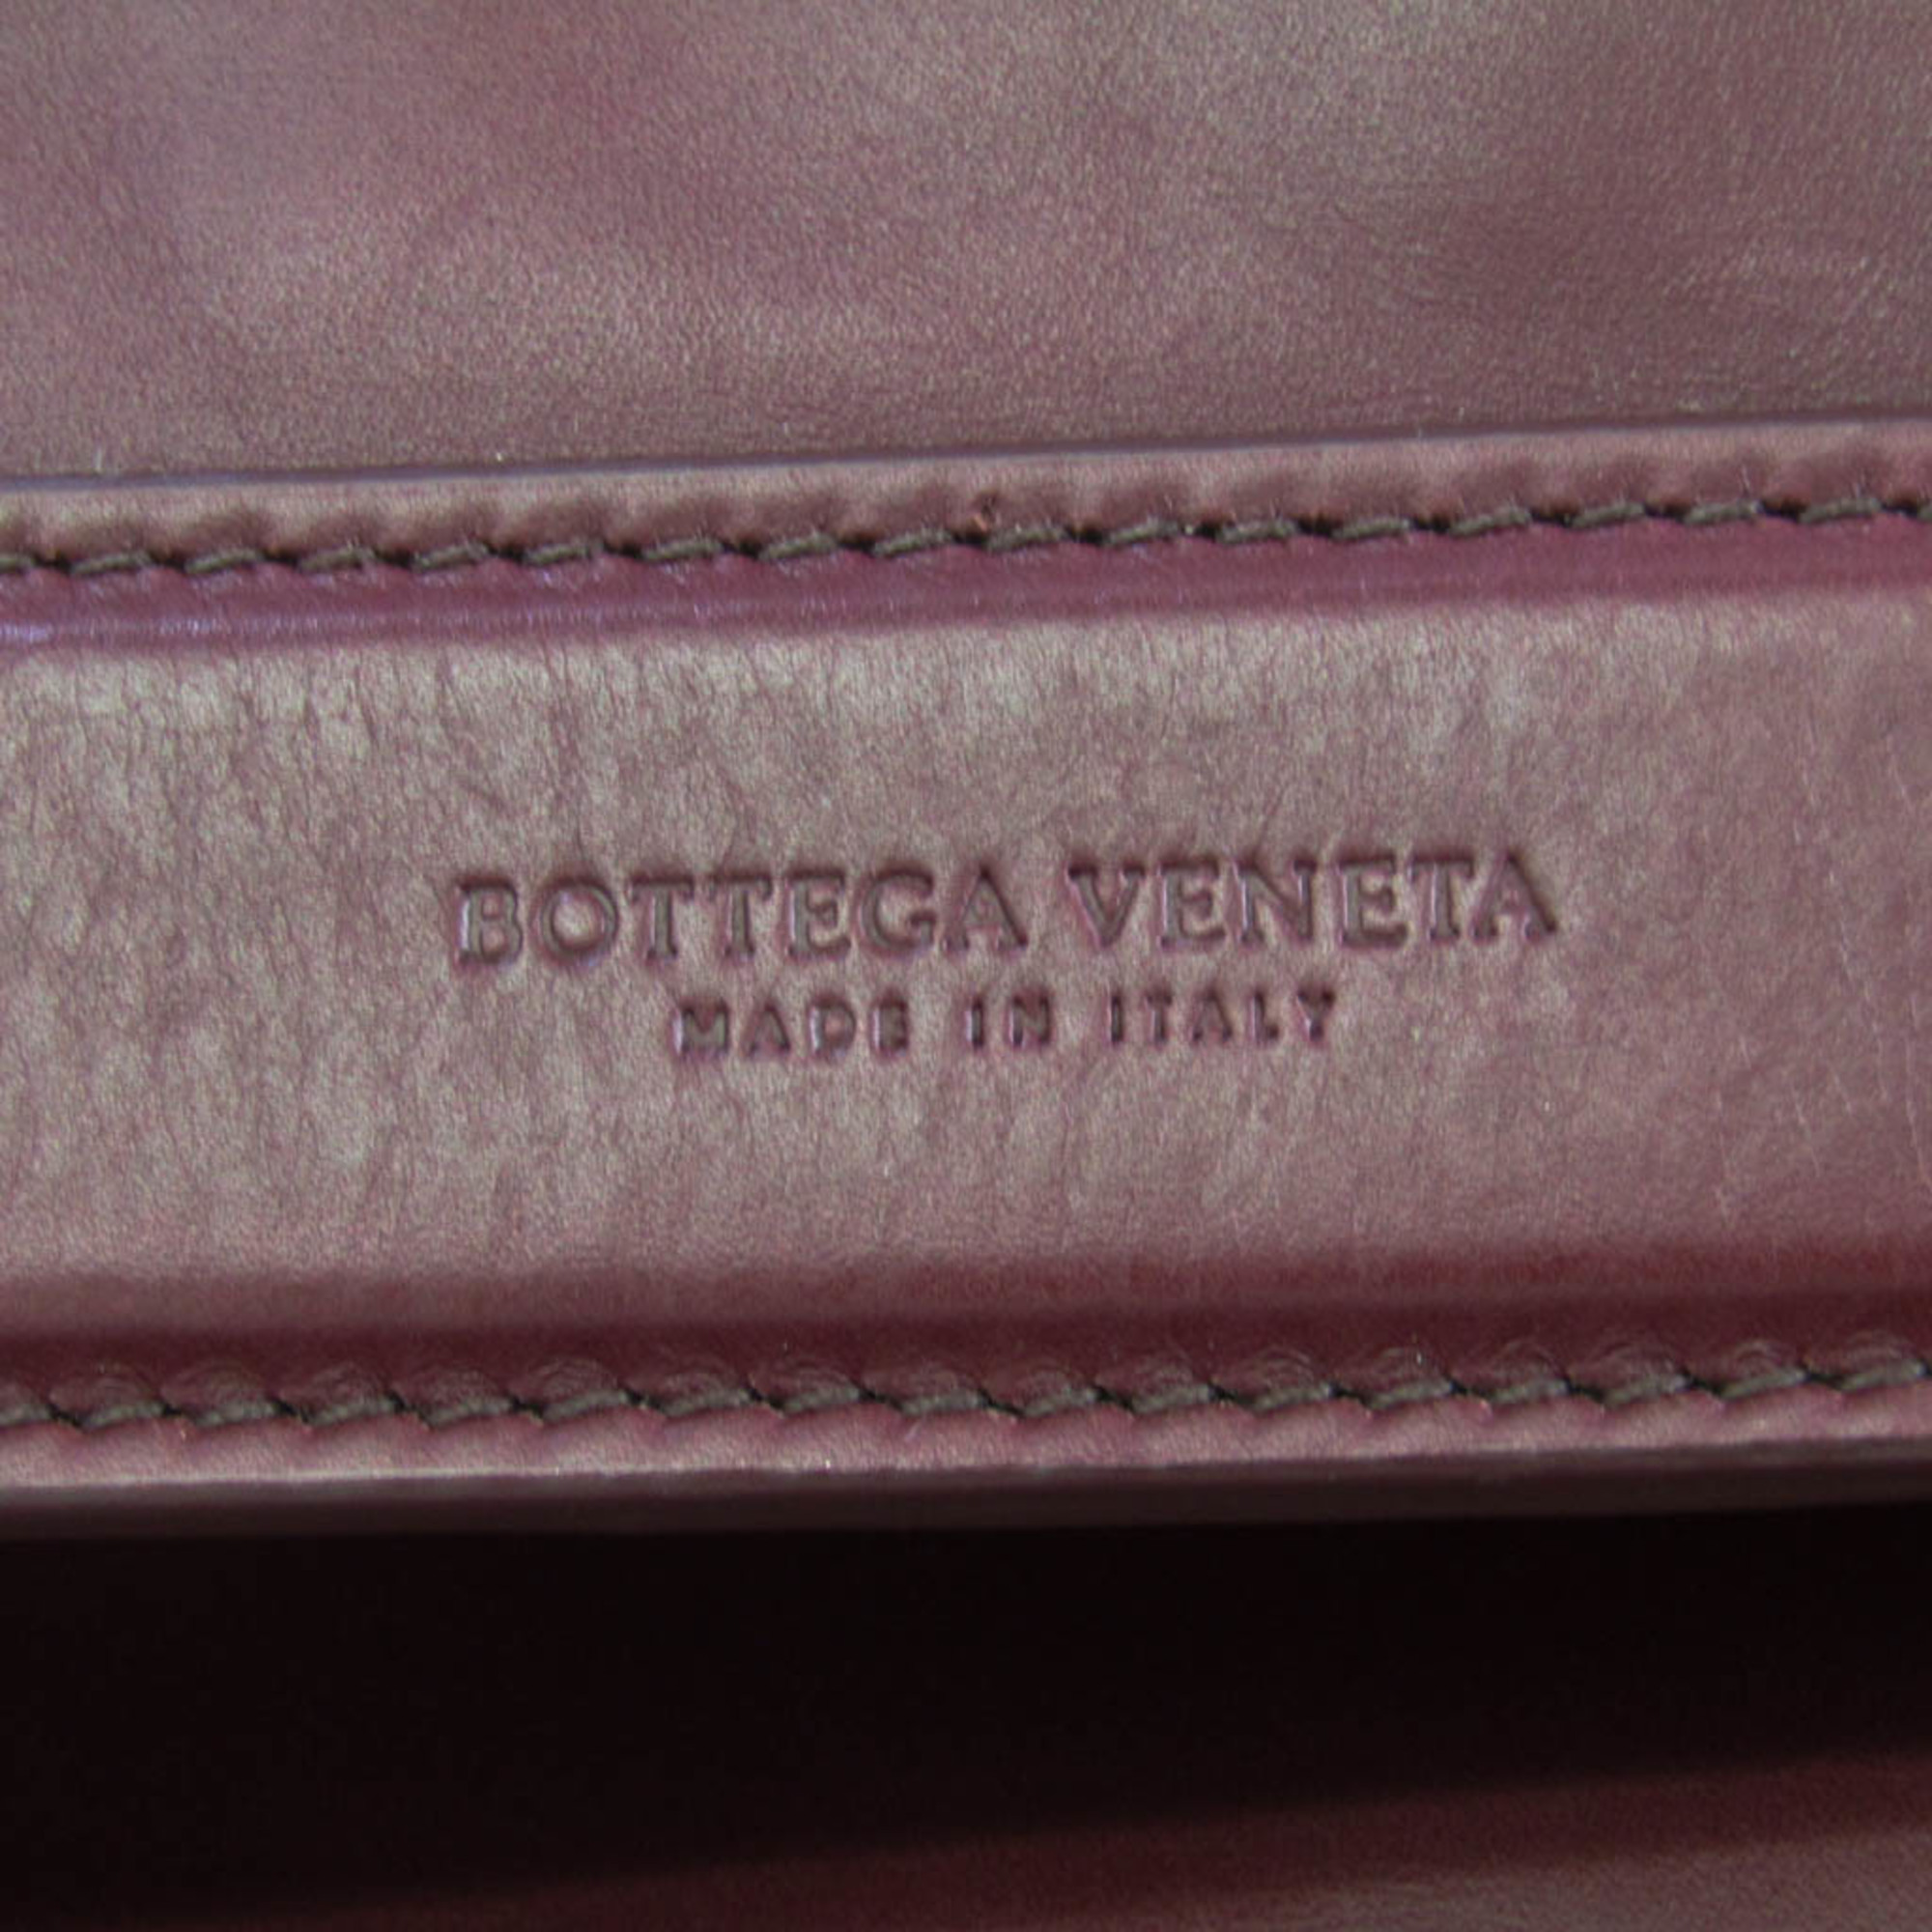 ボッテガ・ヴェネタ(Bottega Veneta) ユニセックス レザー ショルダーバッグ レッド,ワイン